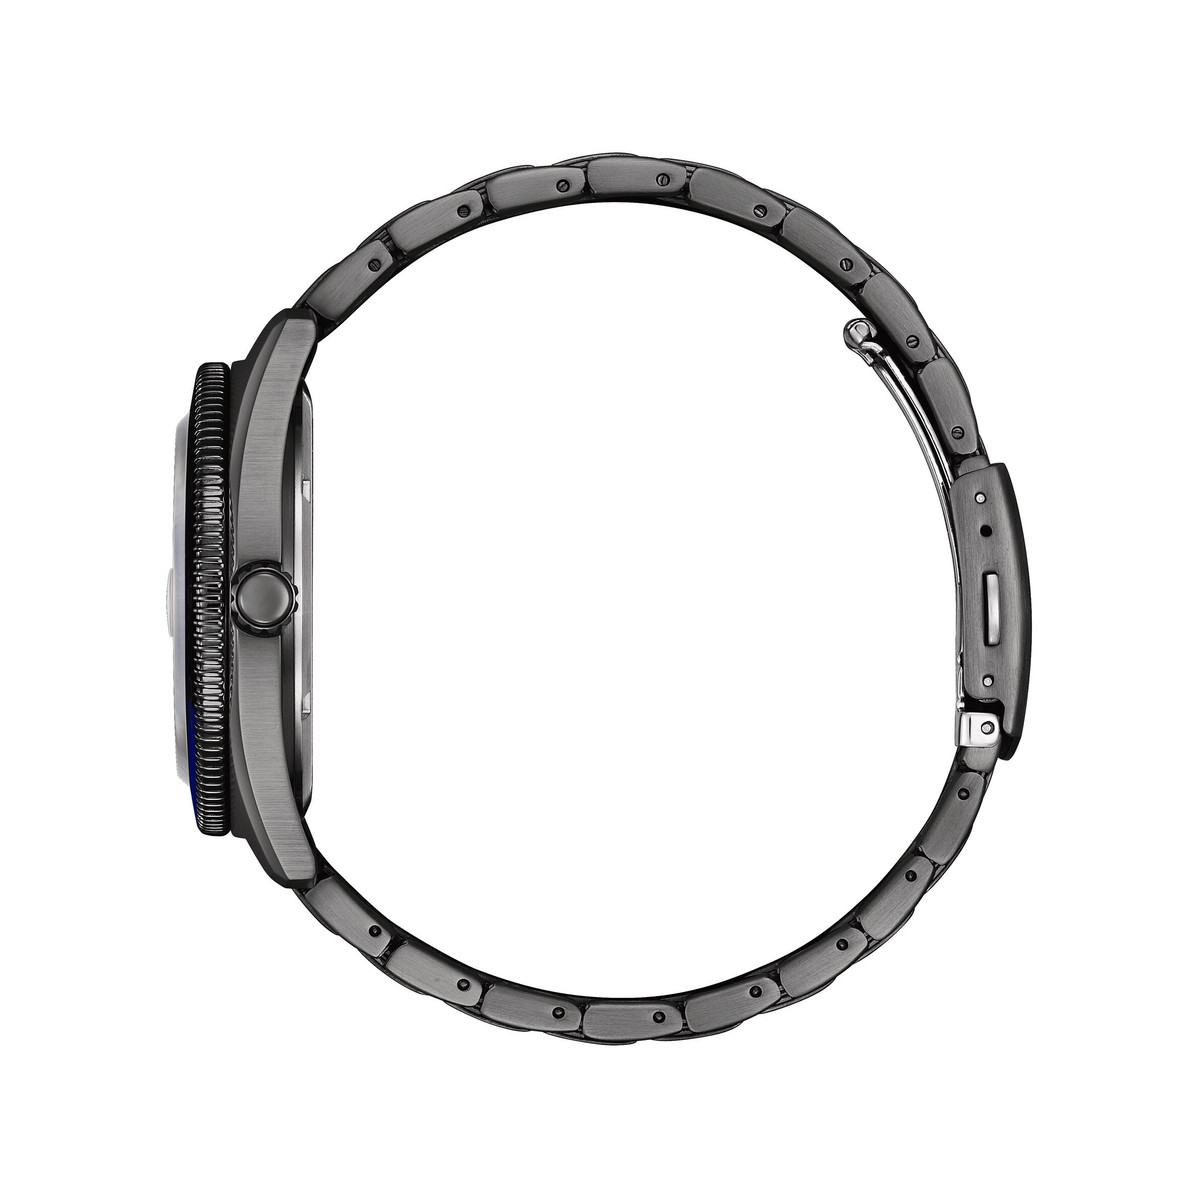 Montre CITIZEN sunset eco-drive homme eco-drive acier gris bracelet acier noir - vue 2